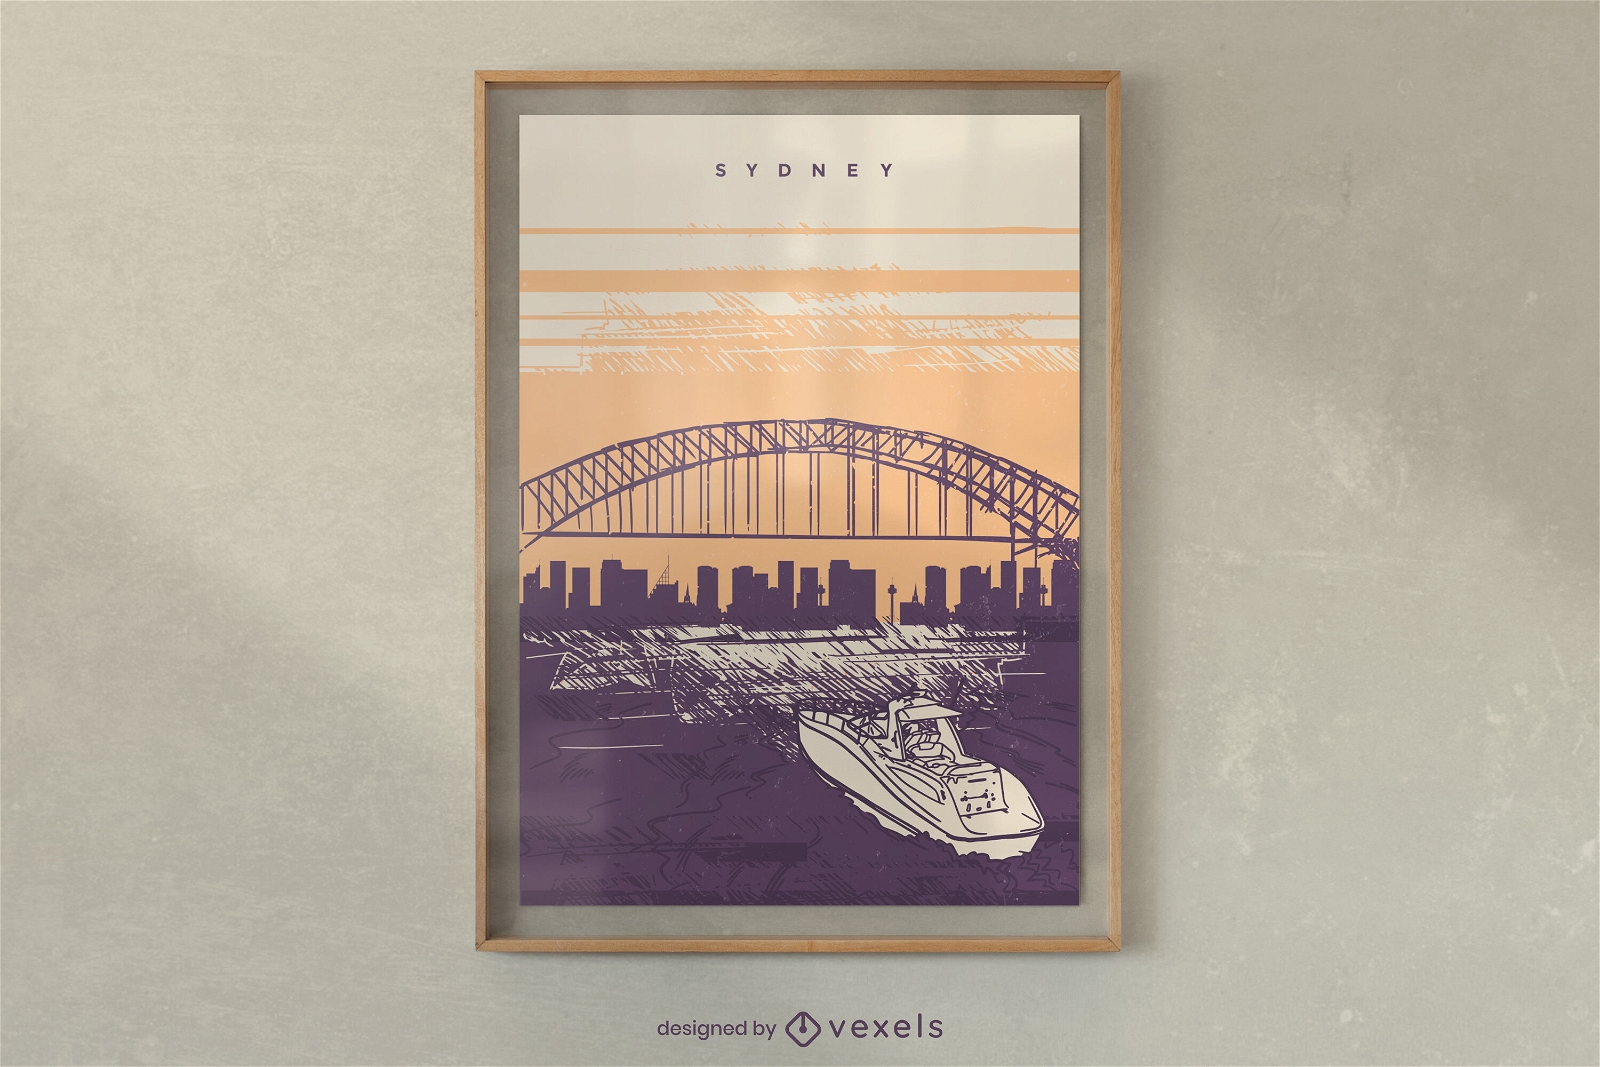 Sydney landscape poster design